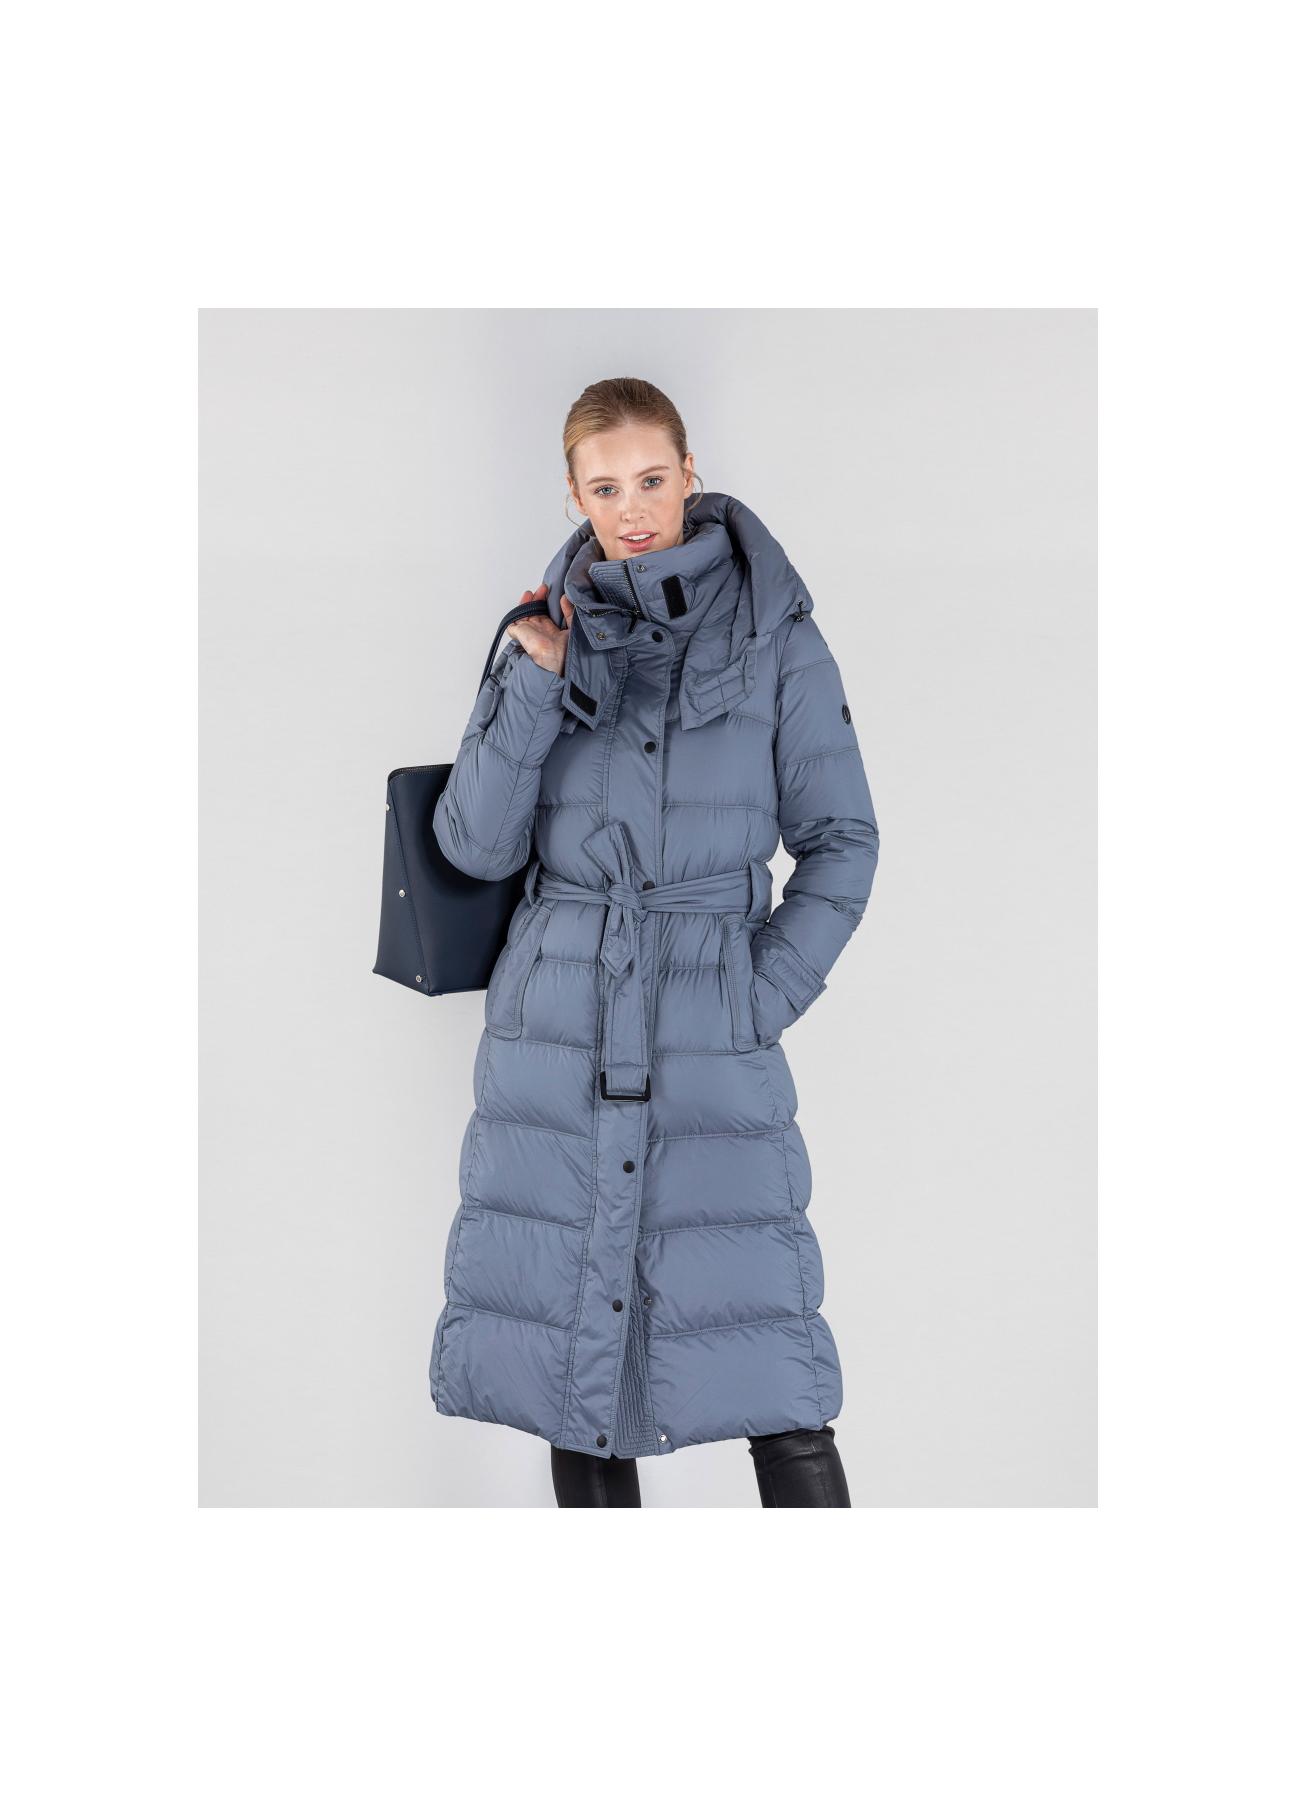 Niebieska zimowa kurtka damska z kapturem KURDT-0268-96(Z20)